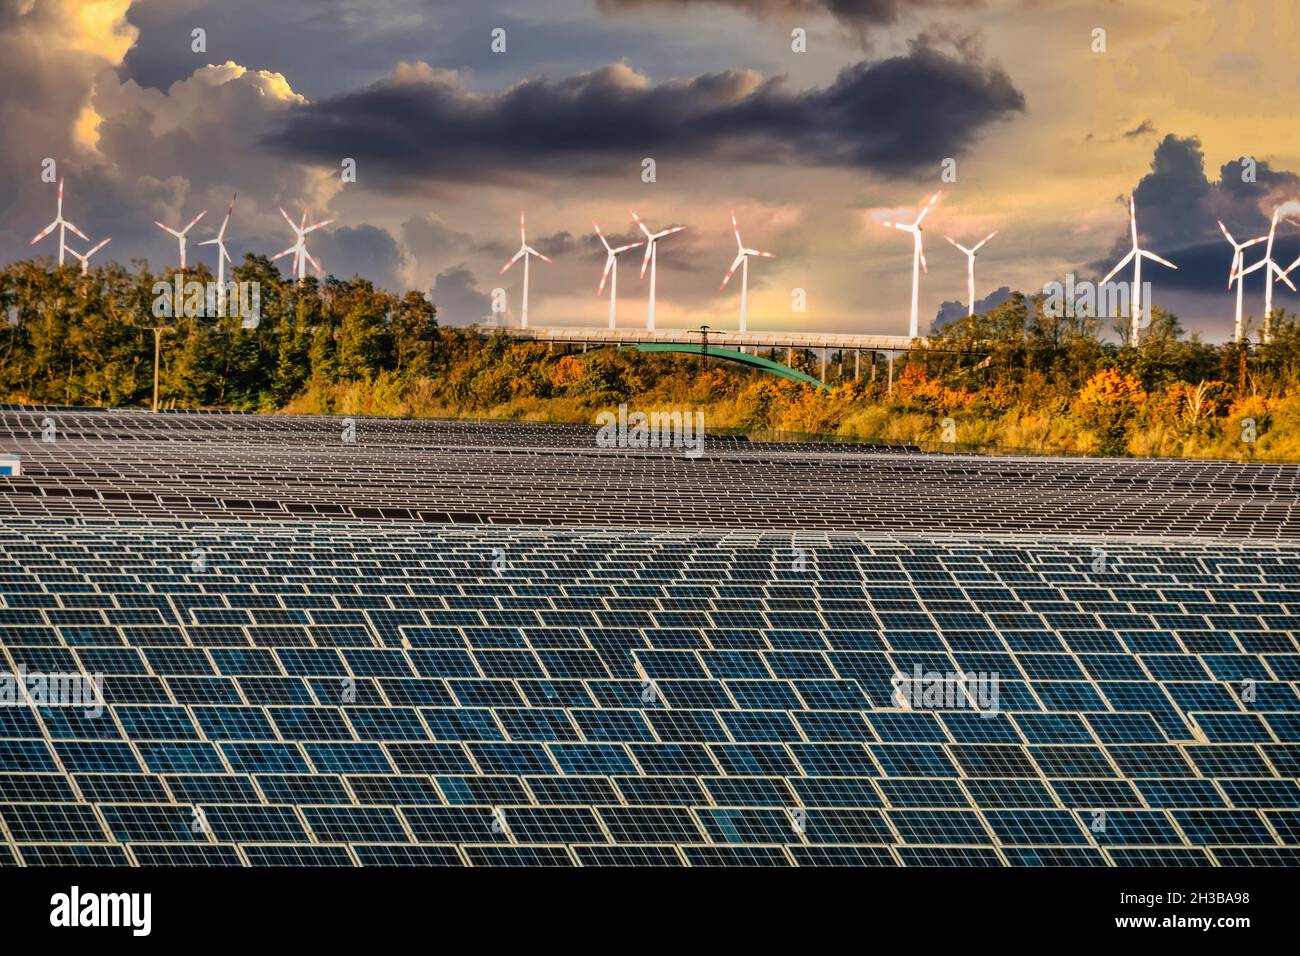 Solar Feld und Windkraftanlagen im Solar Valley .Standort vieler Solarfirmen wie Q-cells Sovello bei Bitterfeld-Wolfen in Sachsen-Anhalt, Deutschland Stock Photo